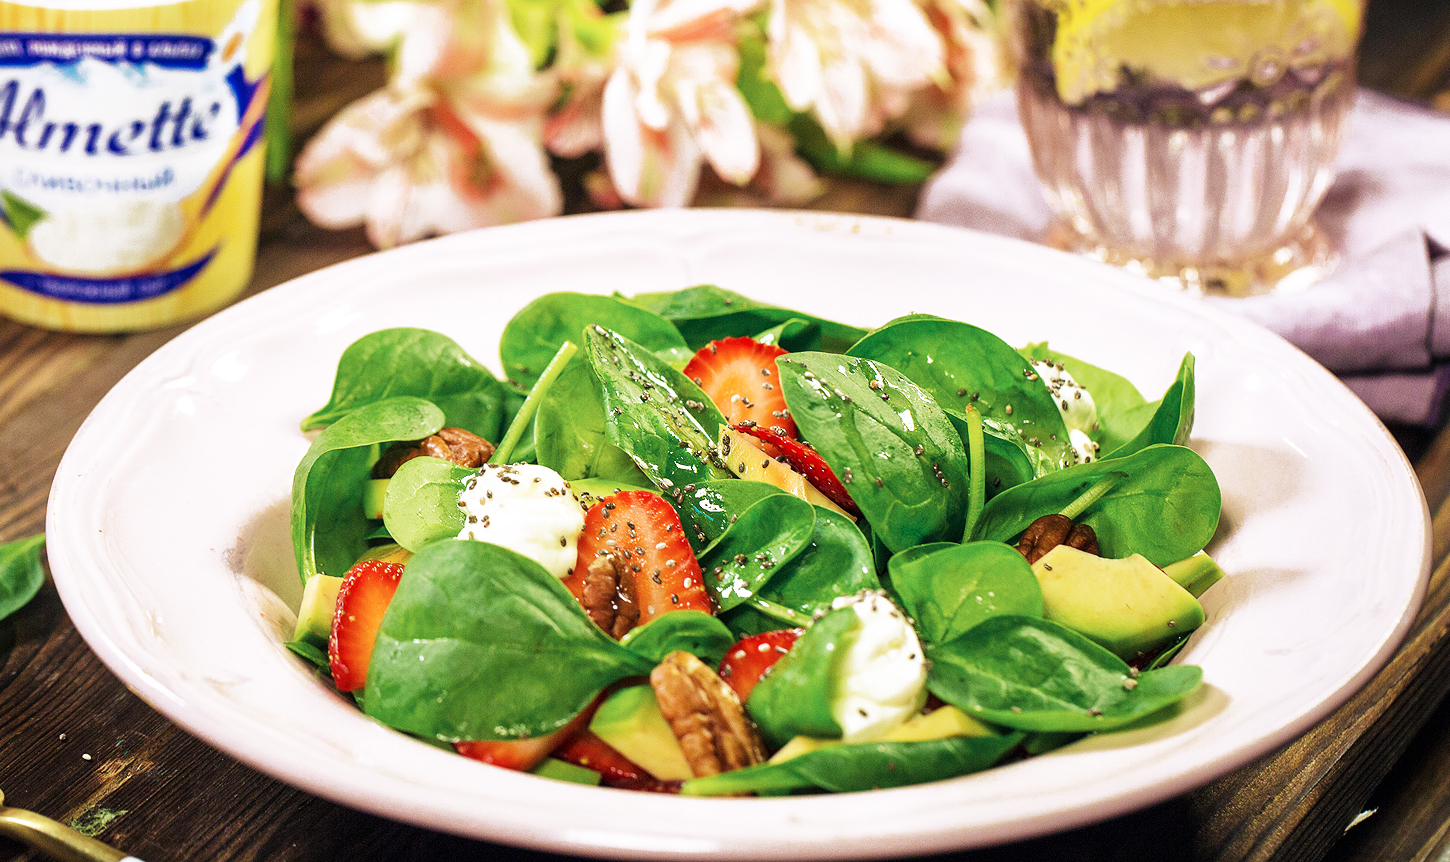 Вкусный и полезный рецепт весеннего салата со шпинатом и клубникой